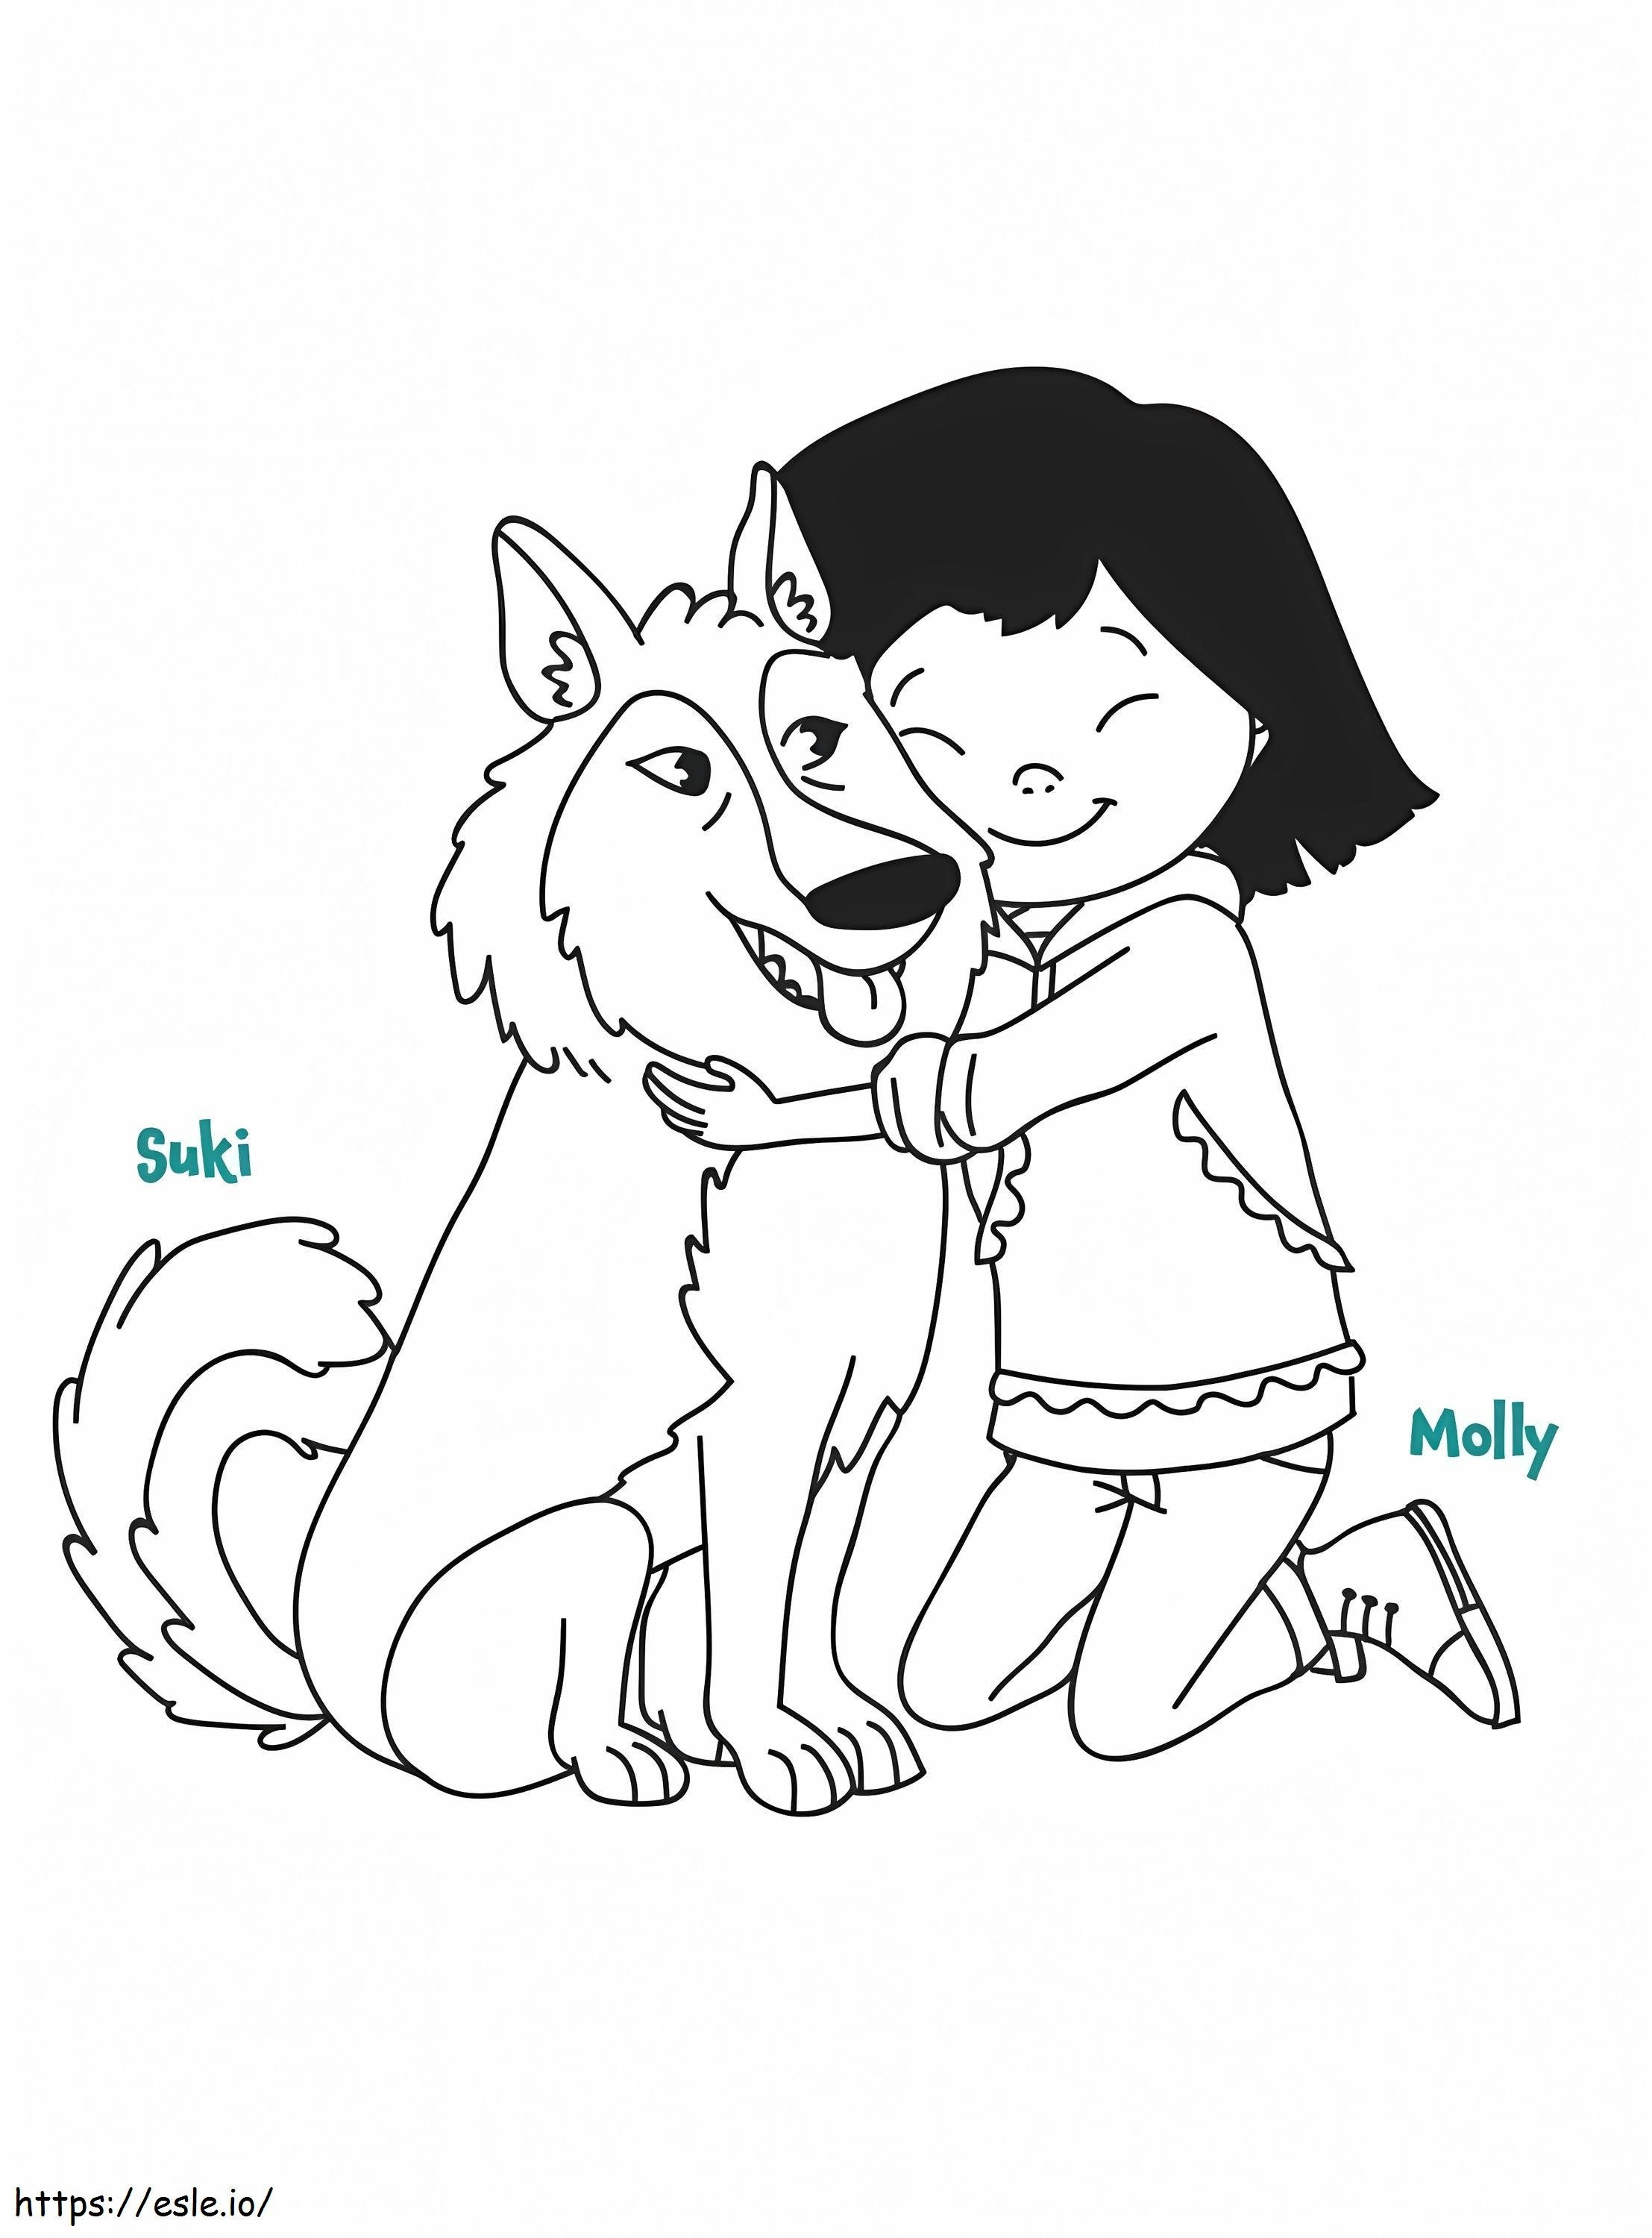 Molly și Suki de la Molly Of Denali de colorat